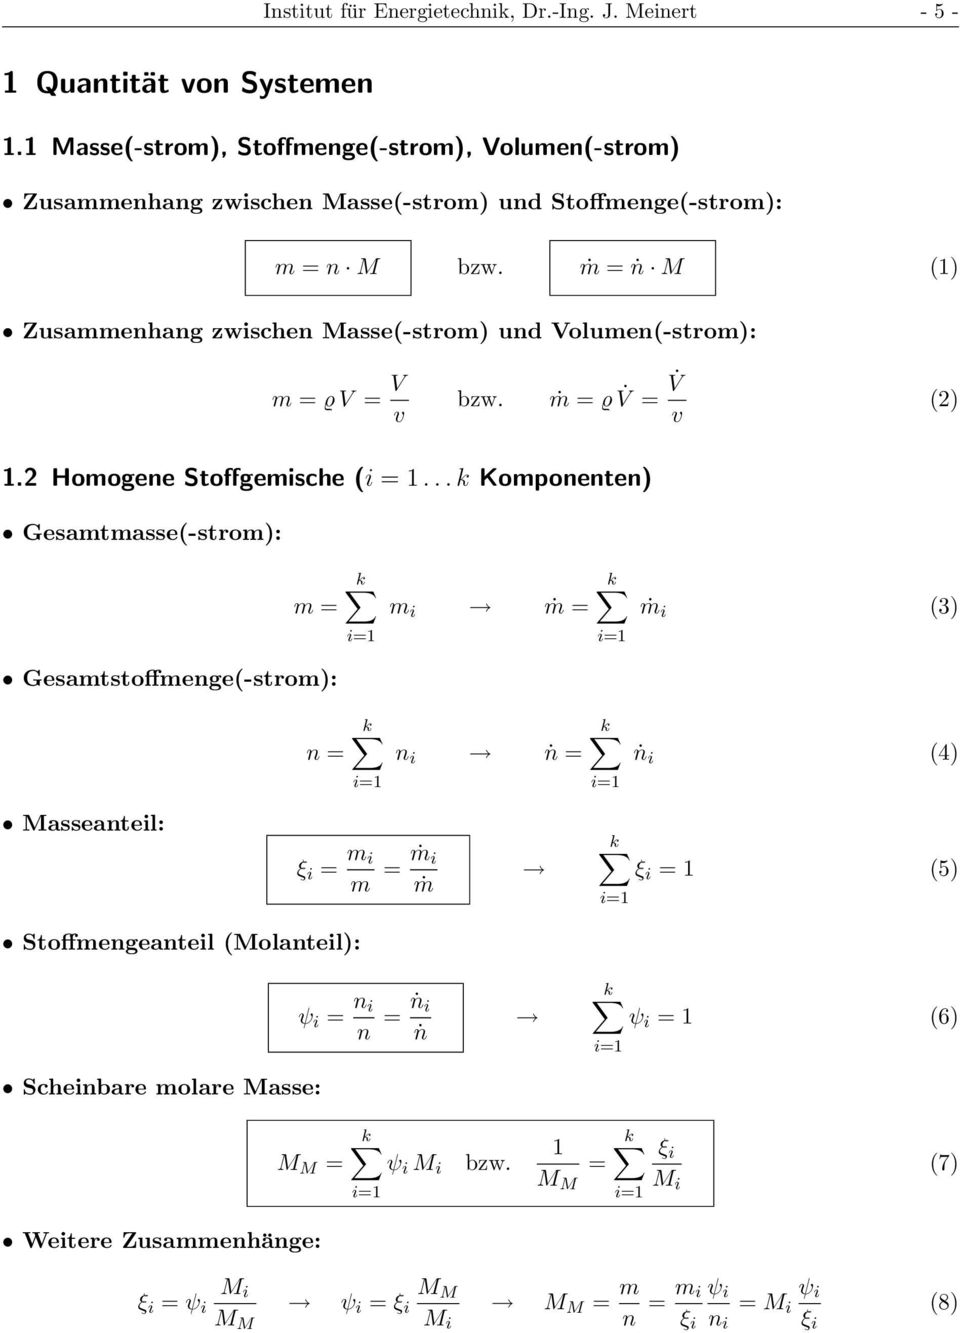 ṁ = ṅ M (1) Zusammenhang zwischen Masse(-strom) und Volumen(-strom): m = ϱ V = V v bzw. ṁ = ϱ V = V v (2) 1.2 Homogene Stoffgemische (i = 1.